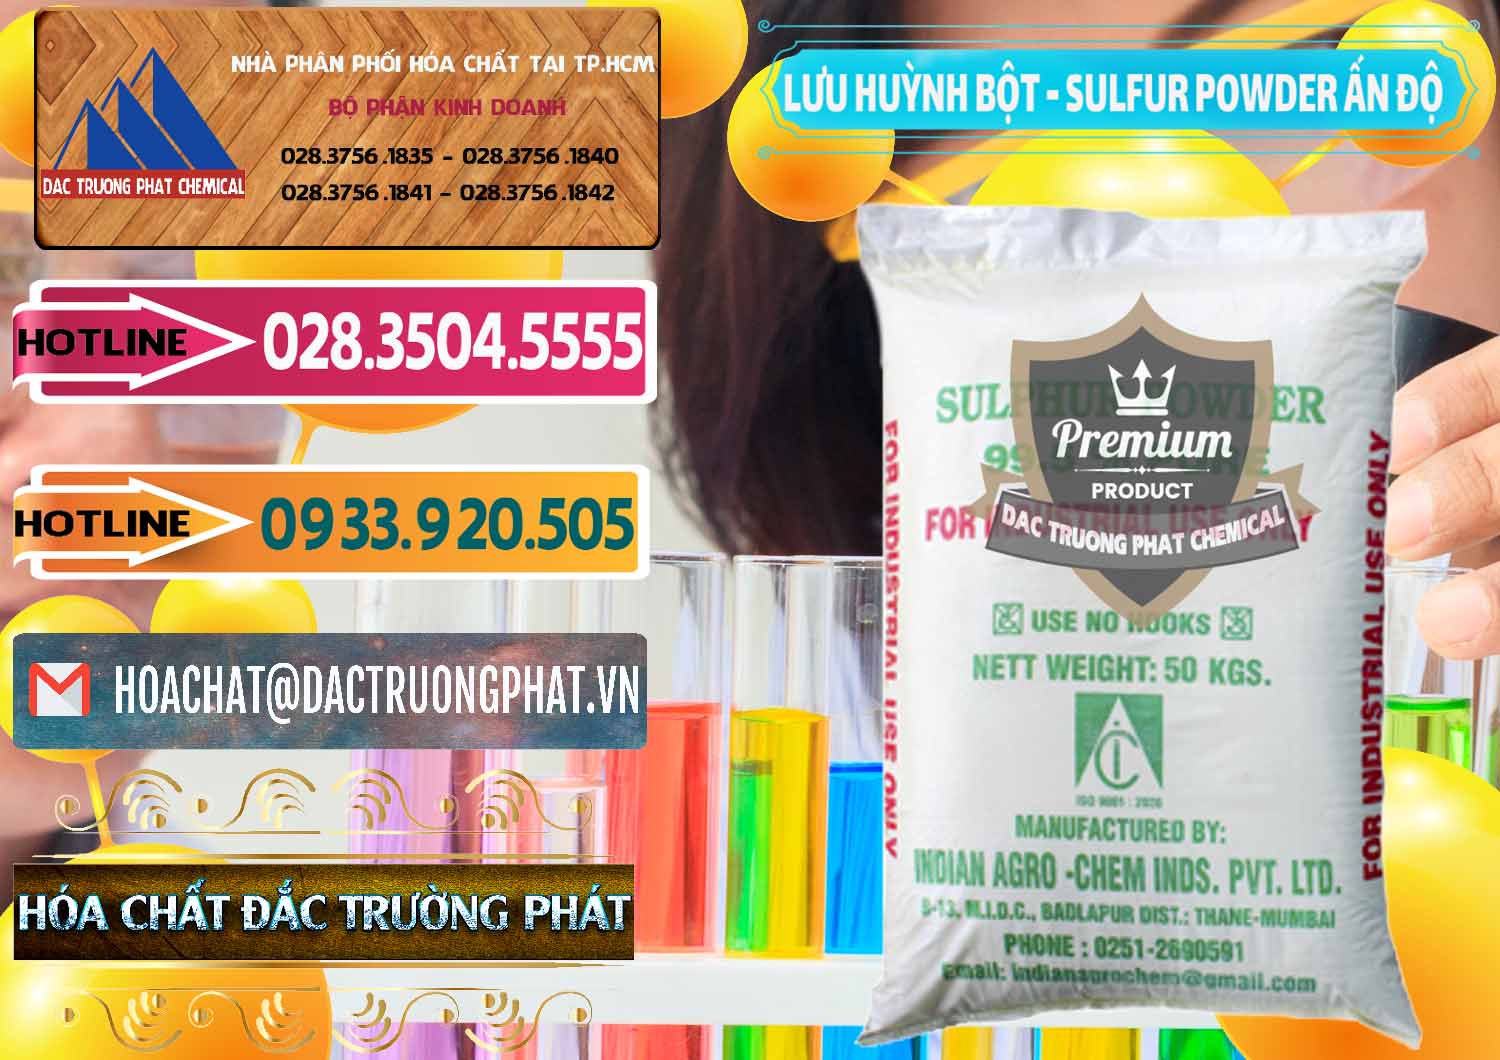 Nơi chuyên phân phối - bán Lưu huỳnh Bột - Sulfur Powder Ấn Độ India - 0347 - Chuyên bán ( phân phối ) hóa chất tại TP.HCM - dactruongphat.vn